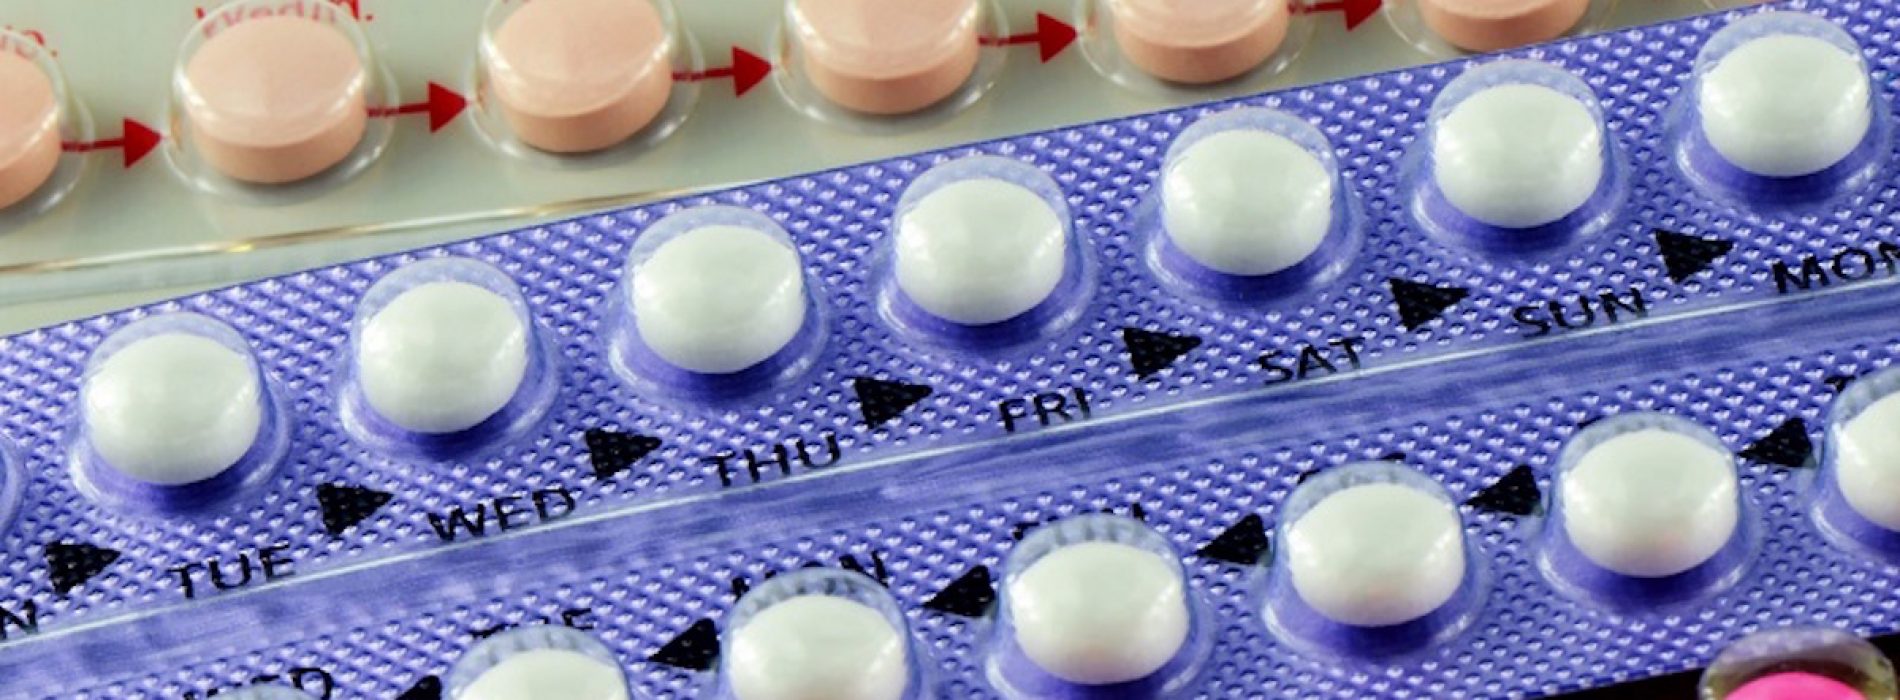 Recentelijk onderzoek heeft aangetoond dat de anticonceptiepil DIT met je doet, deel dit aub verder